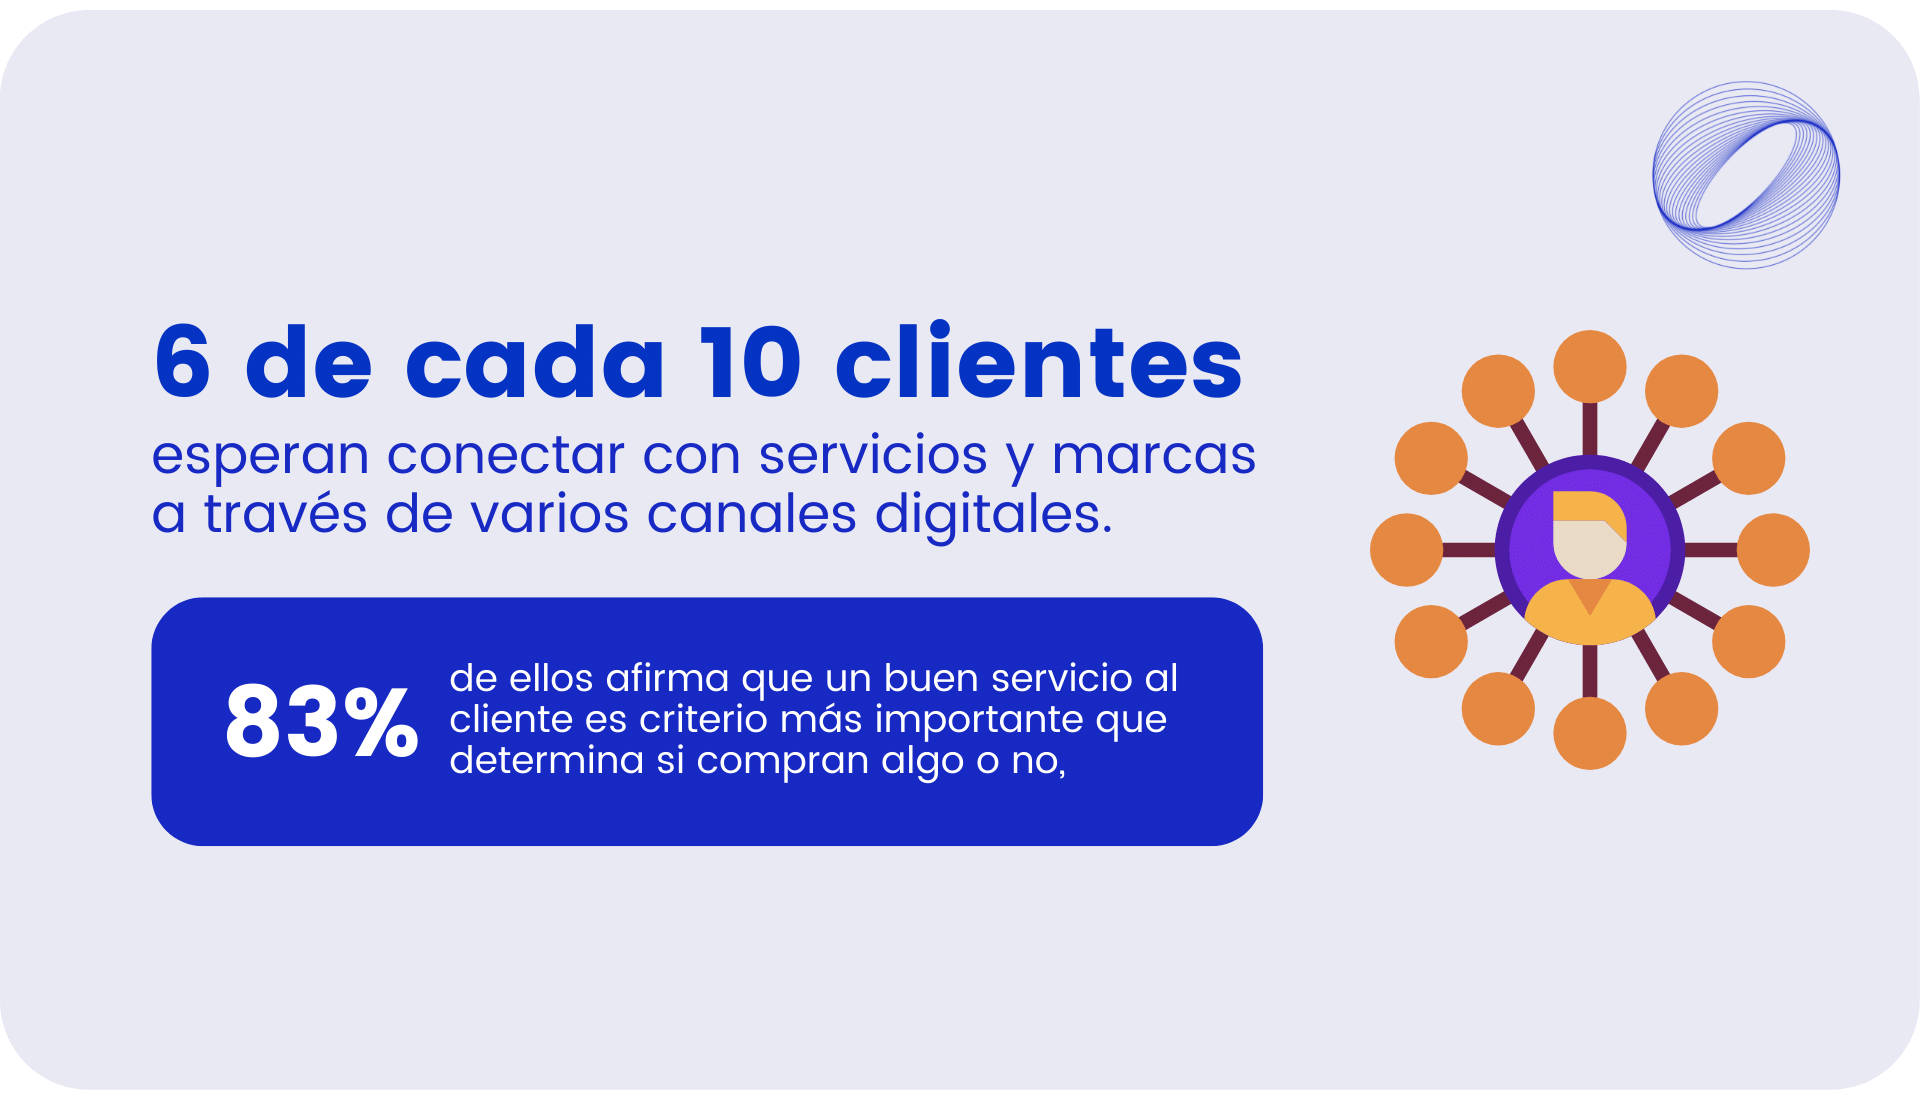 6 de cada 10 clientes esperan conectar con servicios y marcas   a través de varios canales digitales